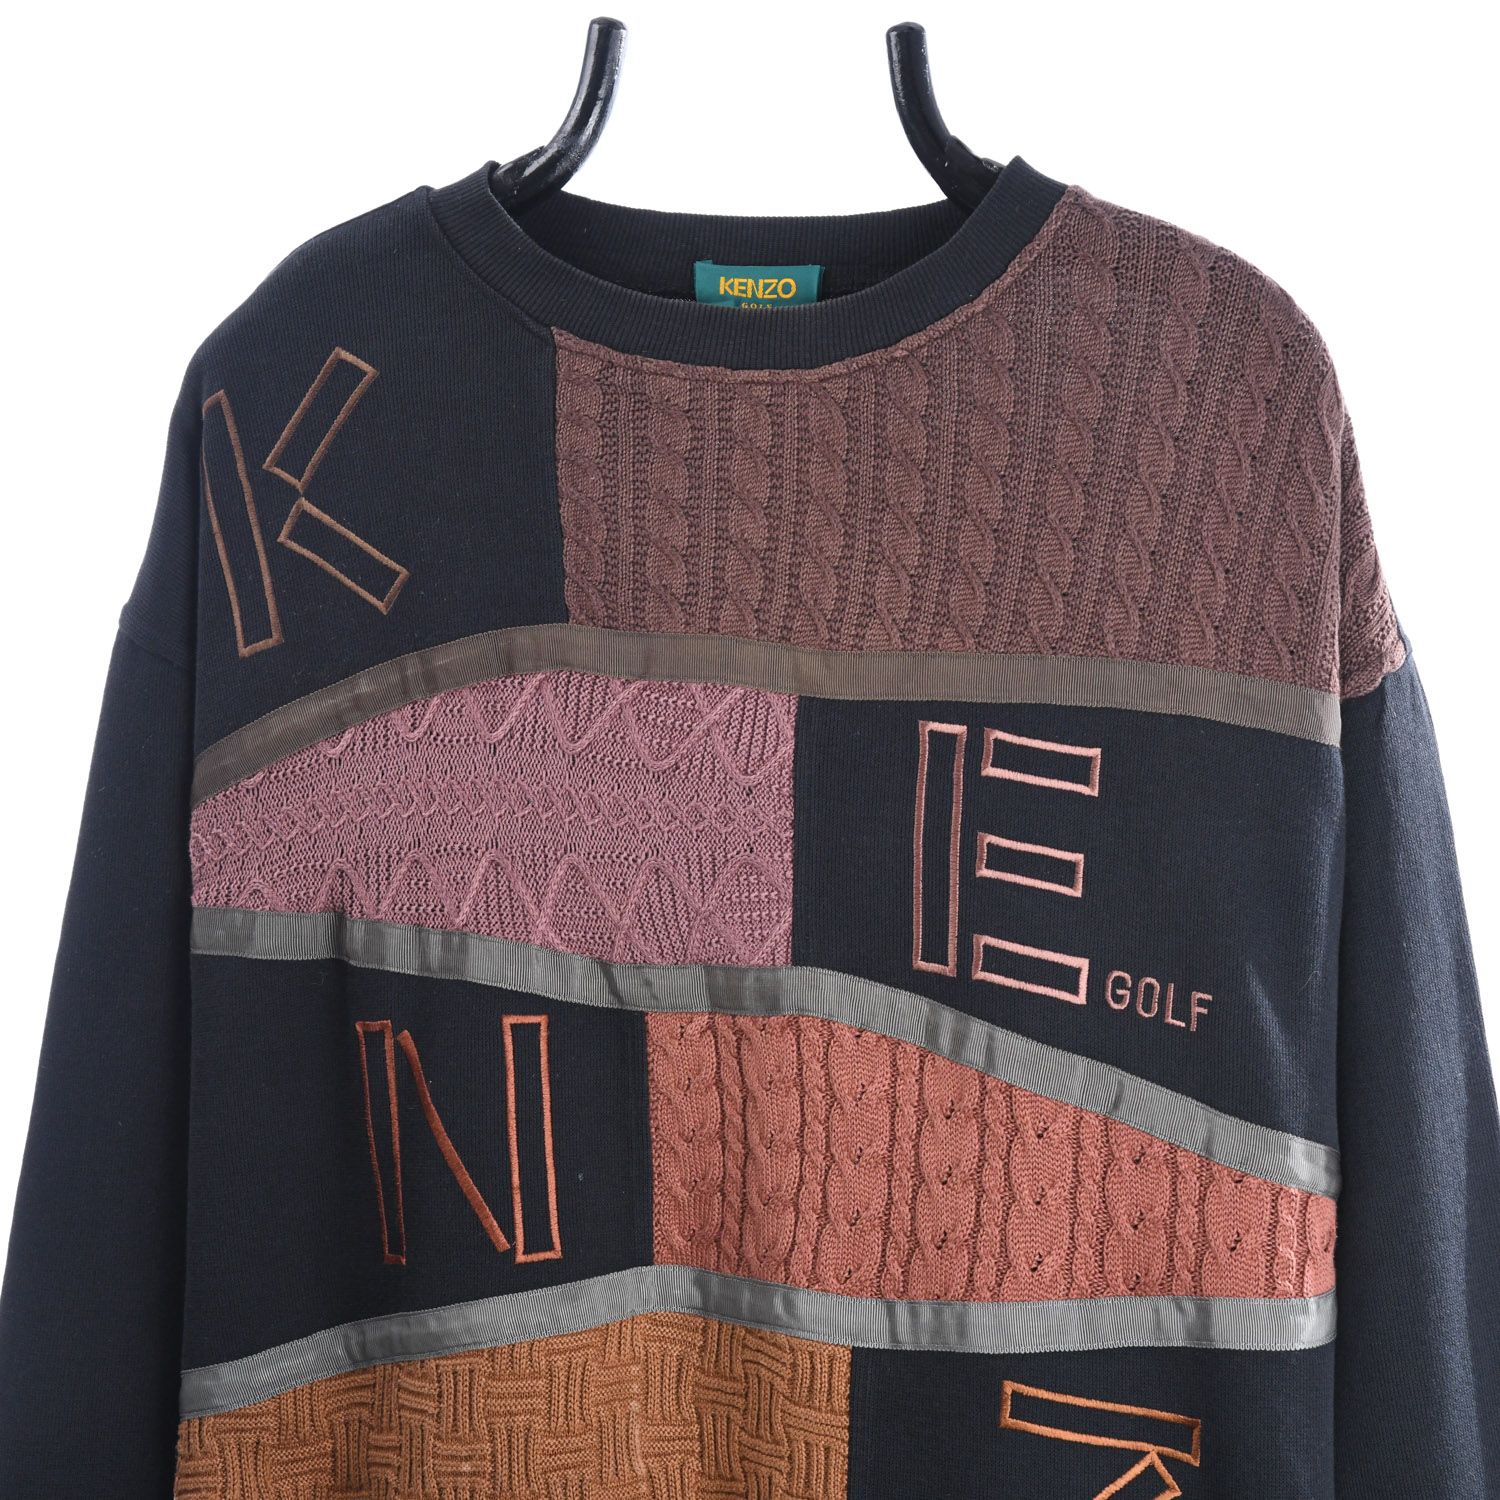 Kenzo Golf Sweatshirt